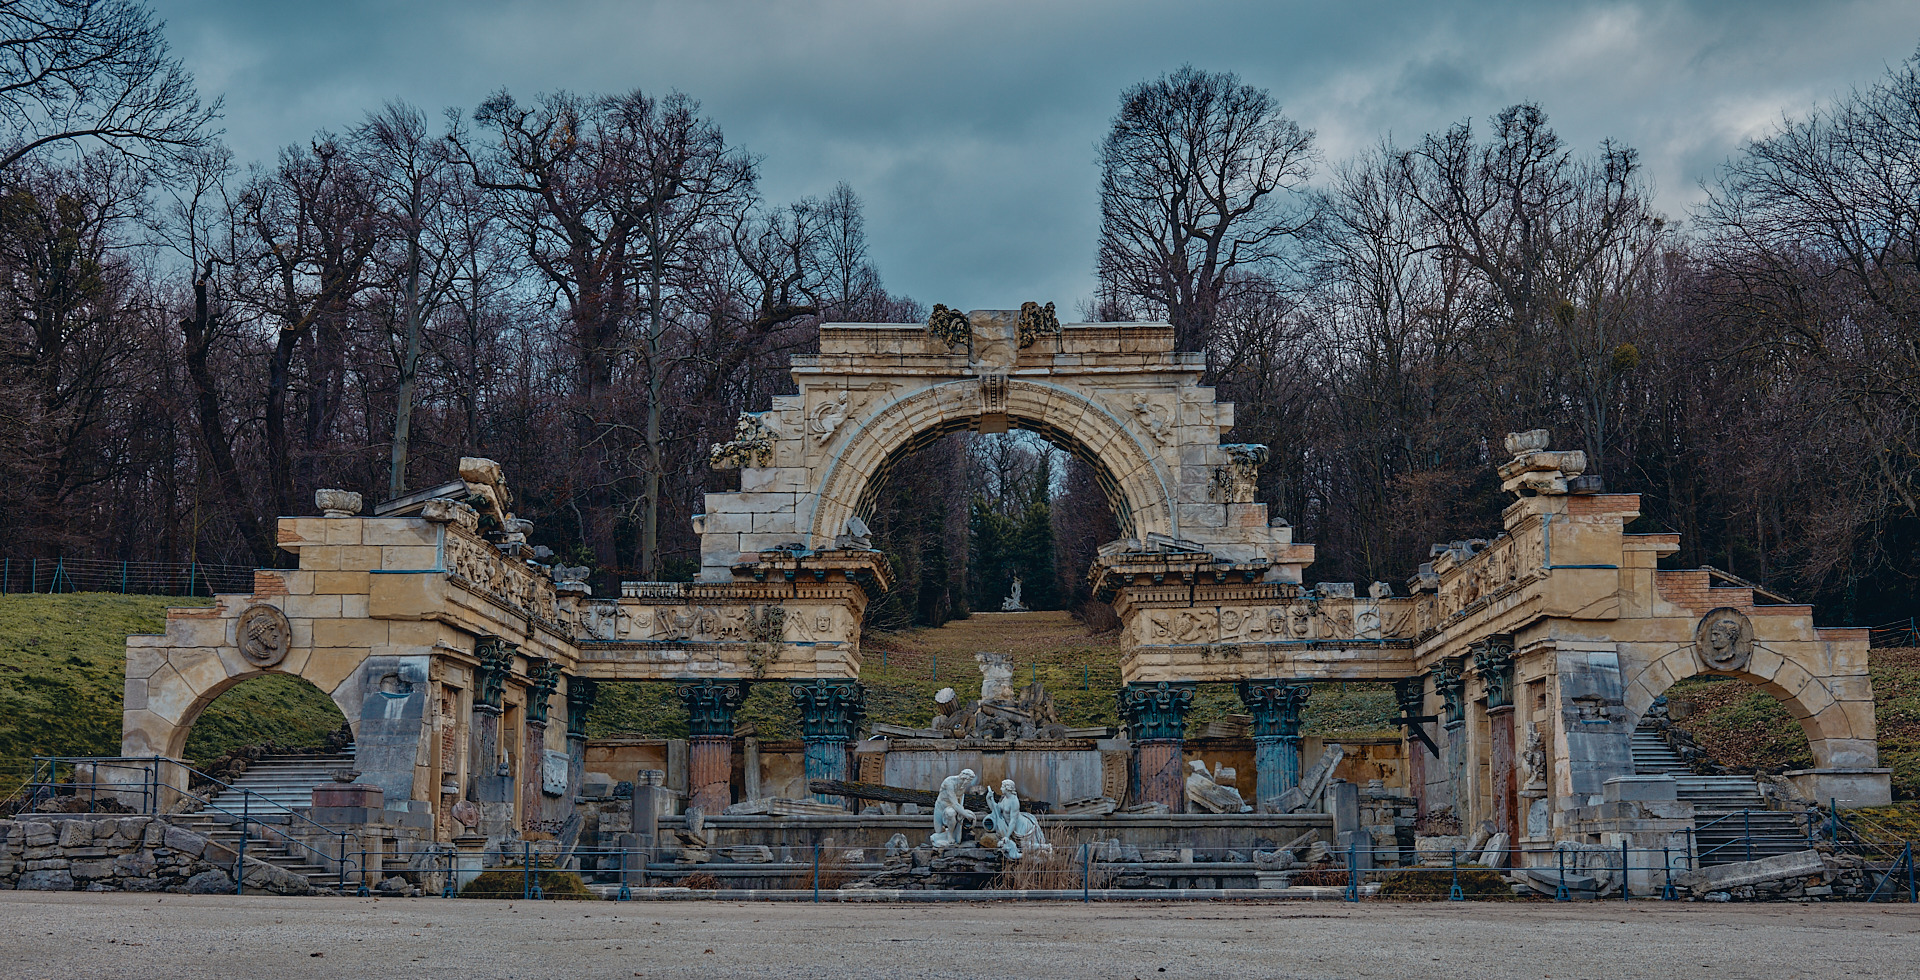 Römer ruine im Schlosspark Schönbrunn